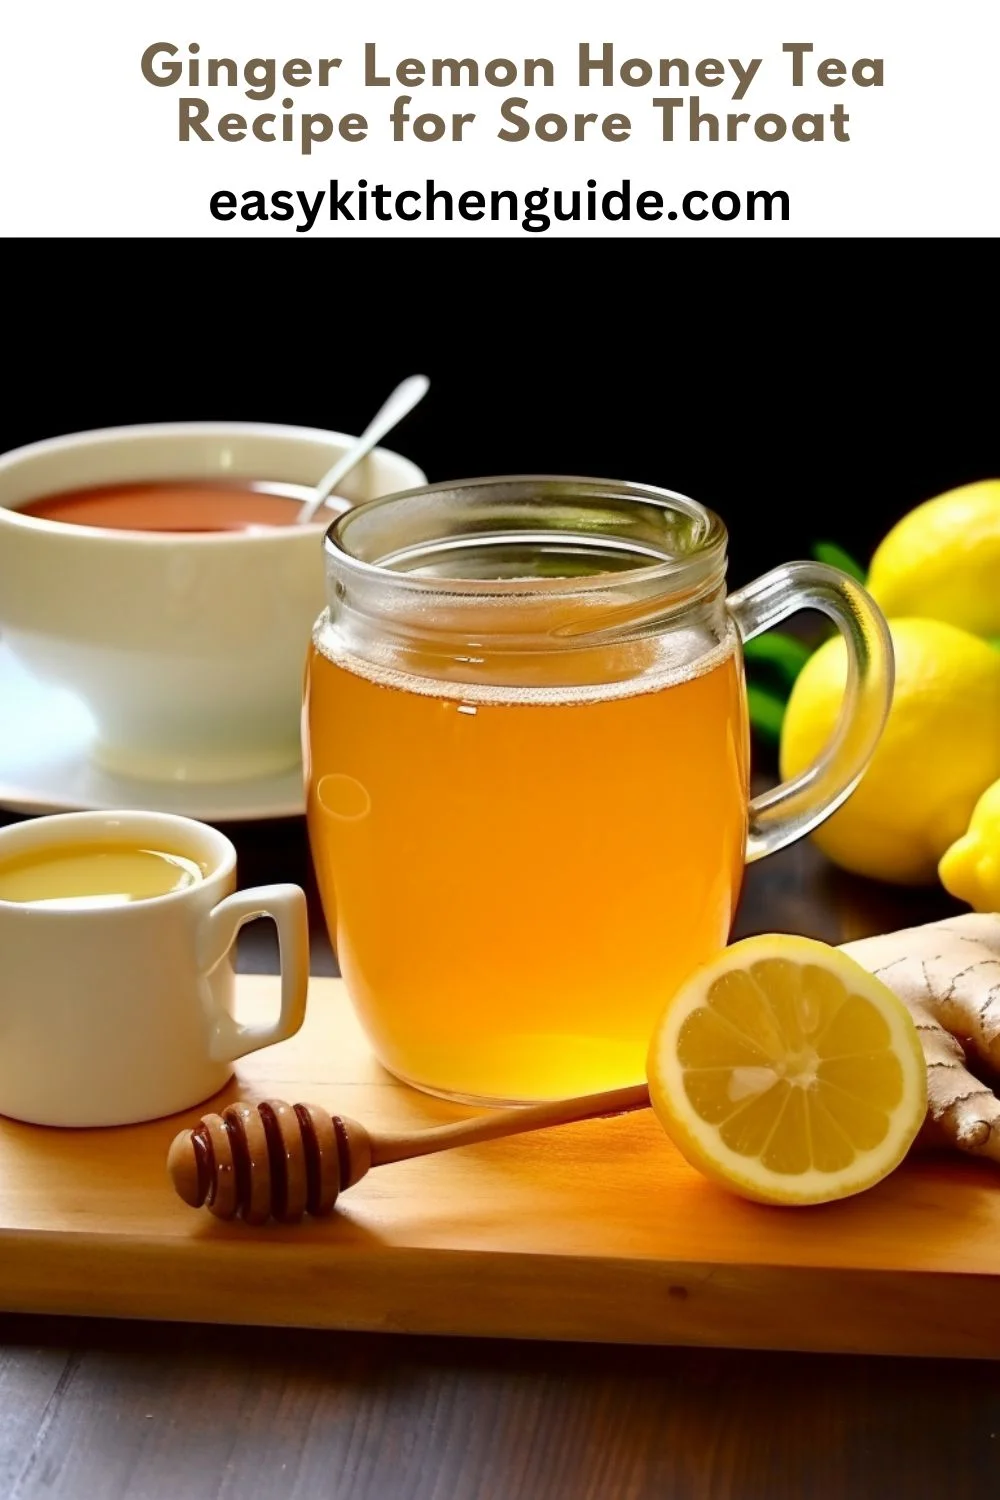 Ginger Lemon Honey Tea Recipe for Sore Throat